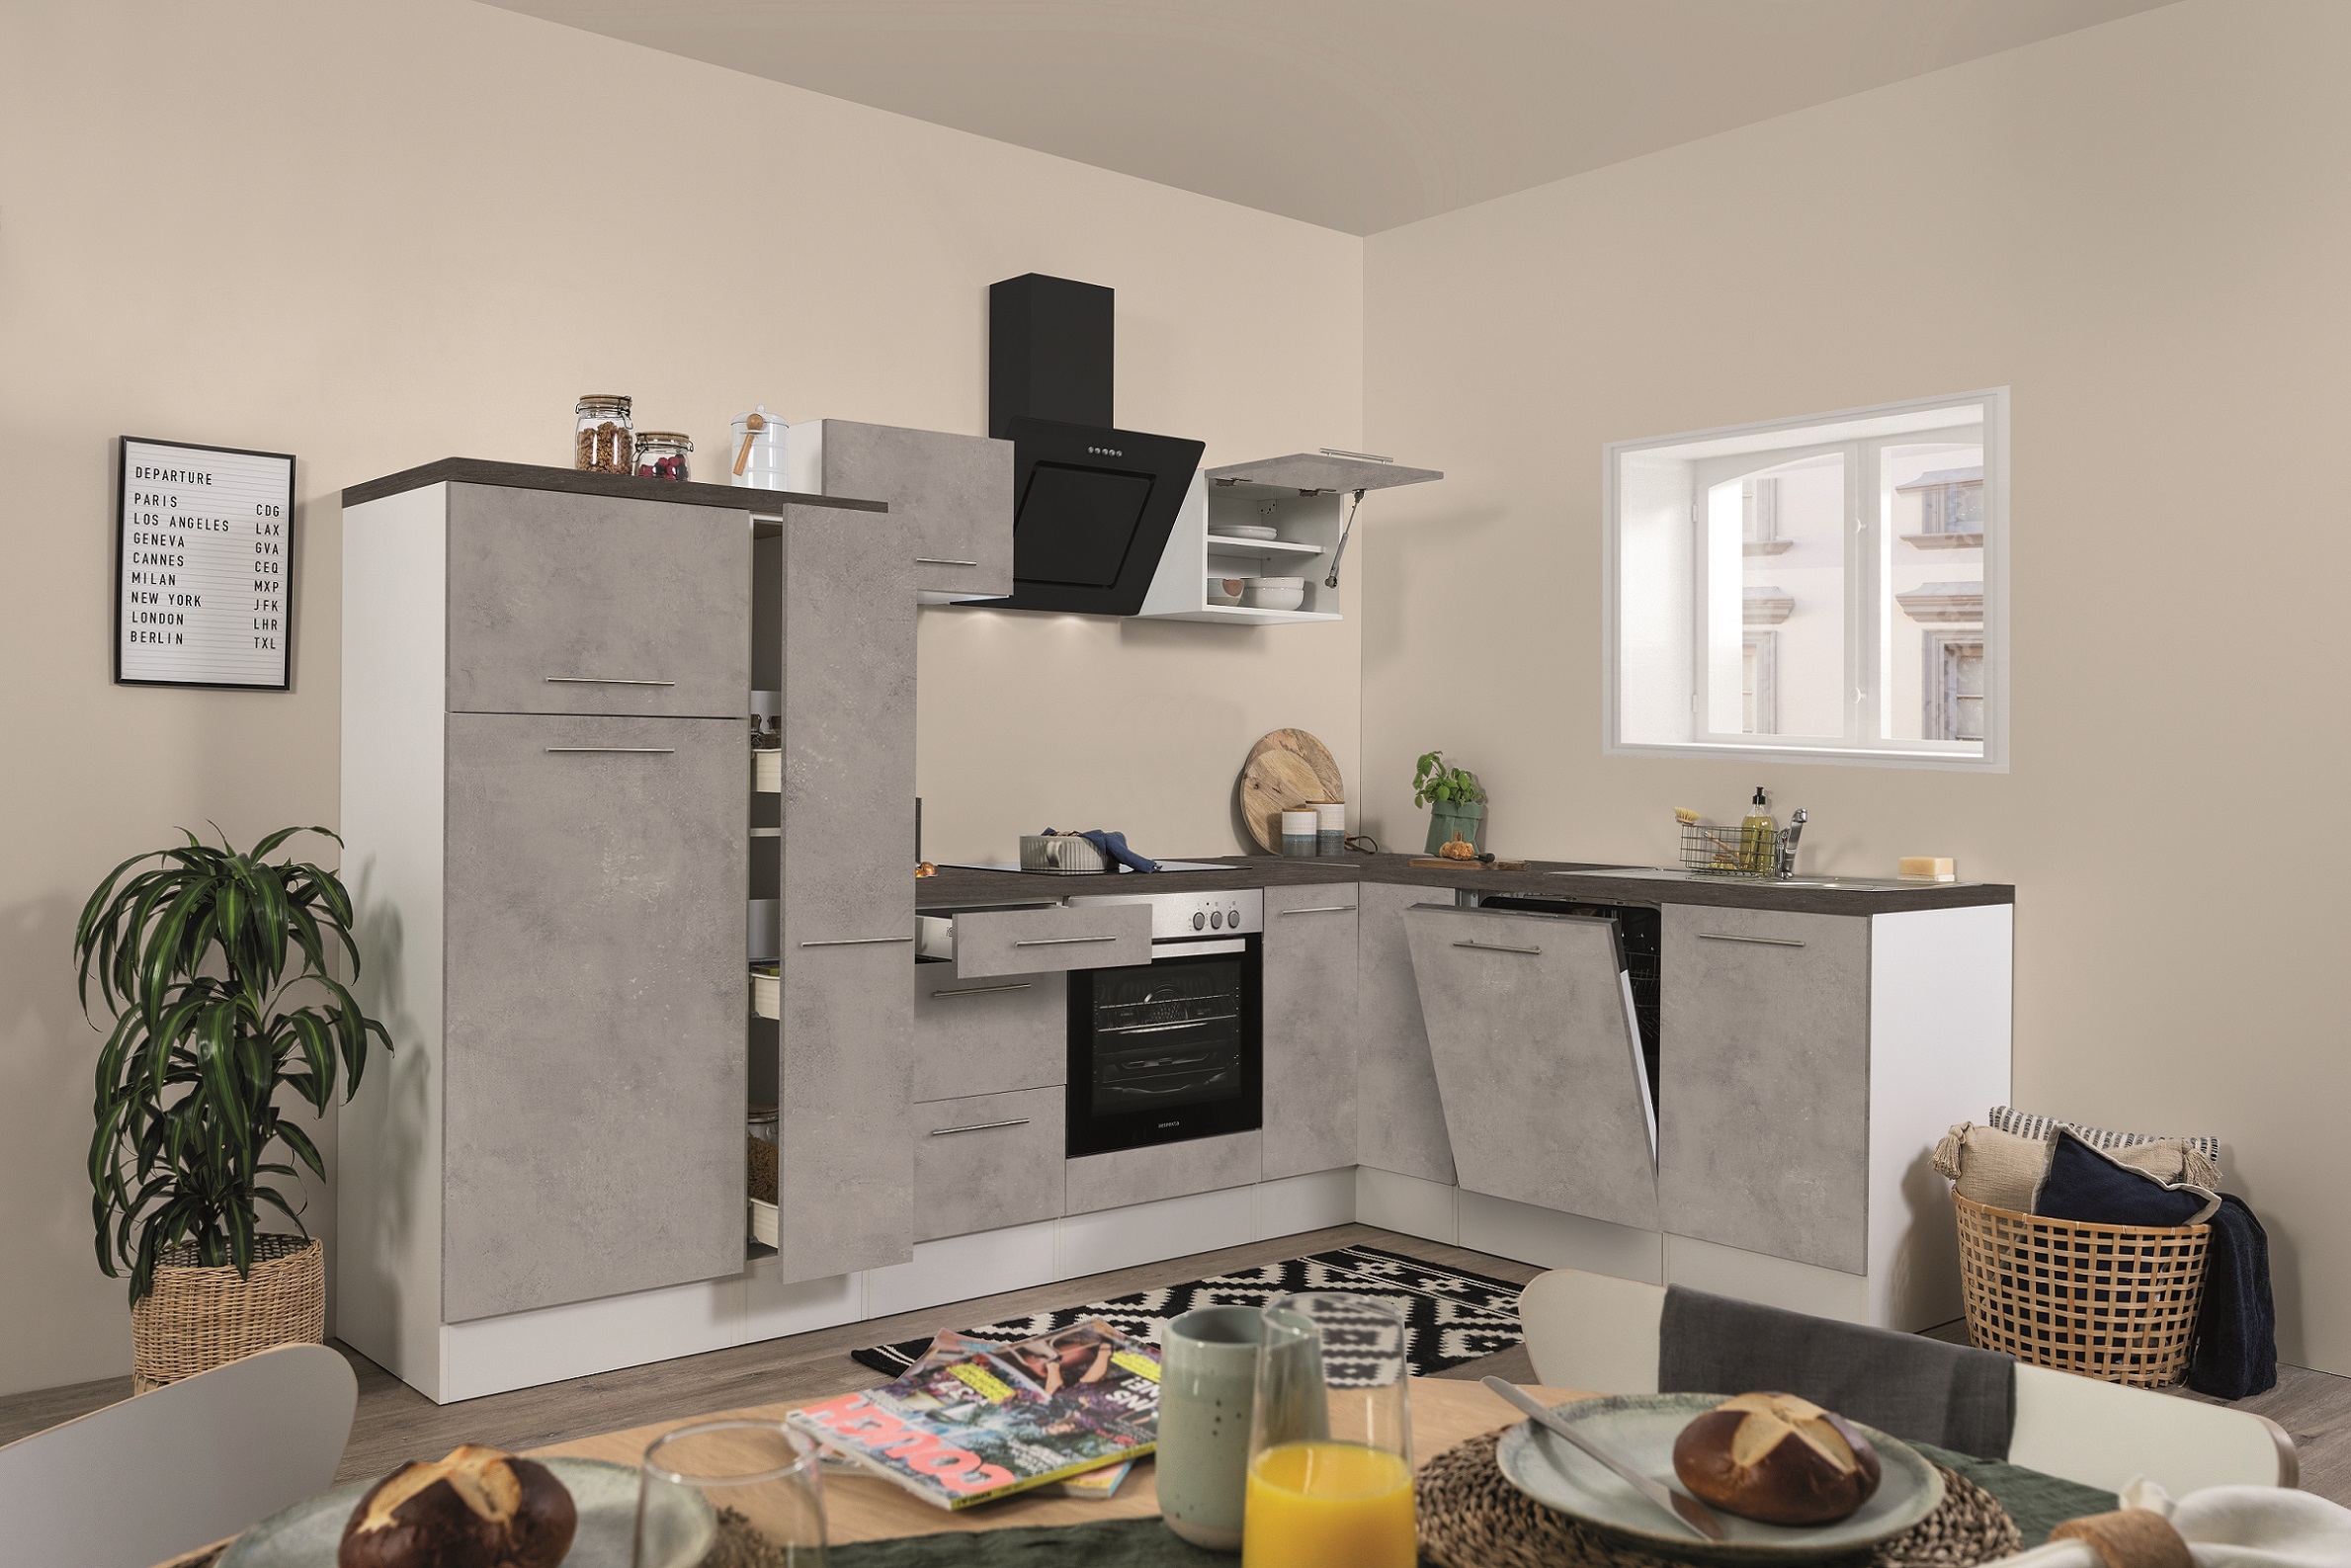  Küche Küchenzeile   Winkelküche Beton Amanda 290 x 200 cm Respekta Premium